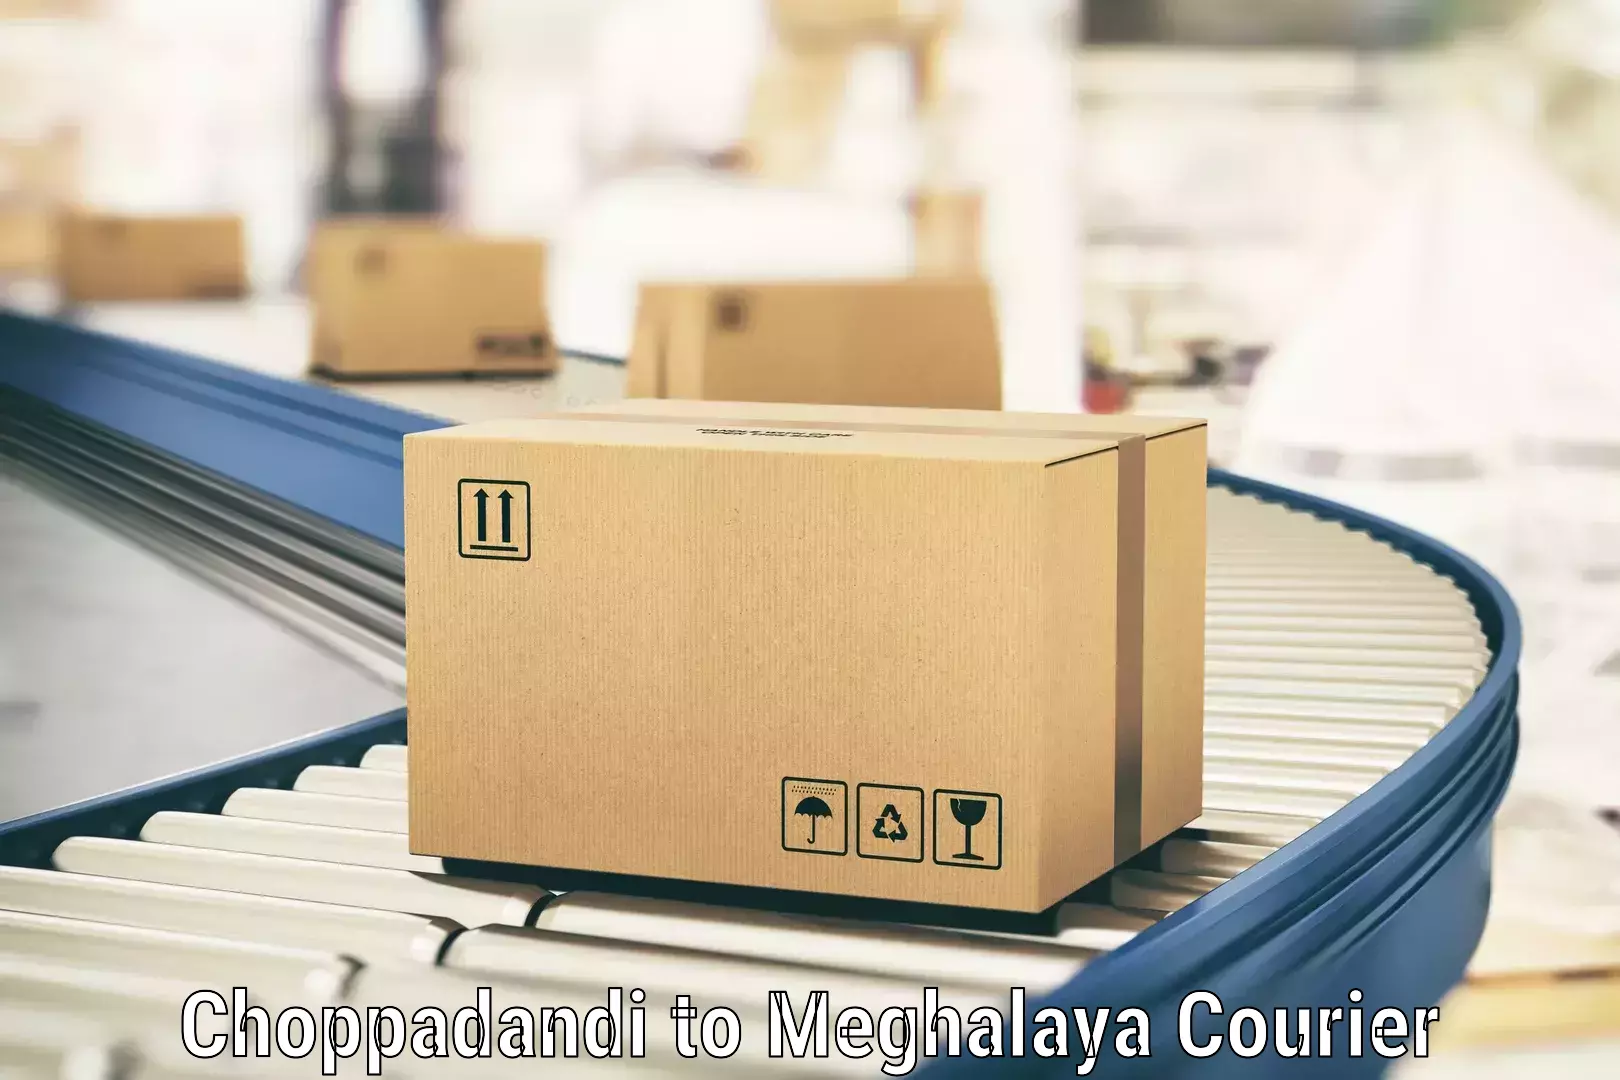 Next-generation courier services Choppadandi to Meghalaya